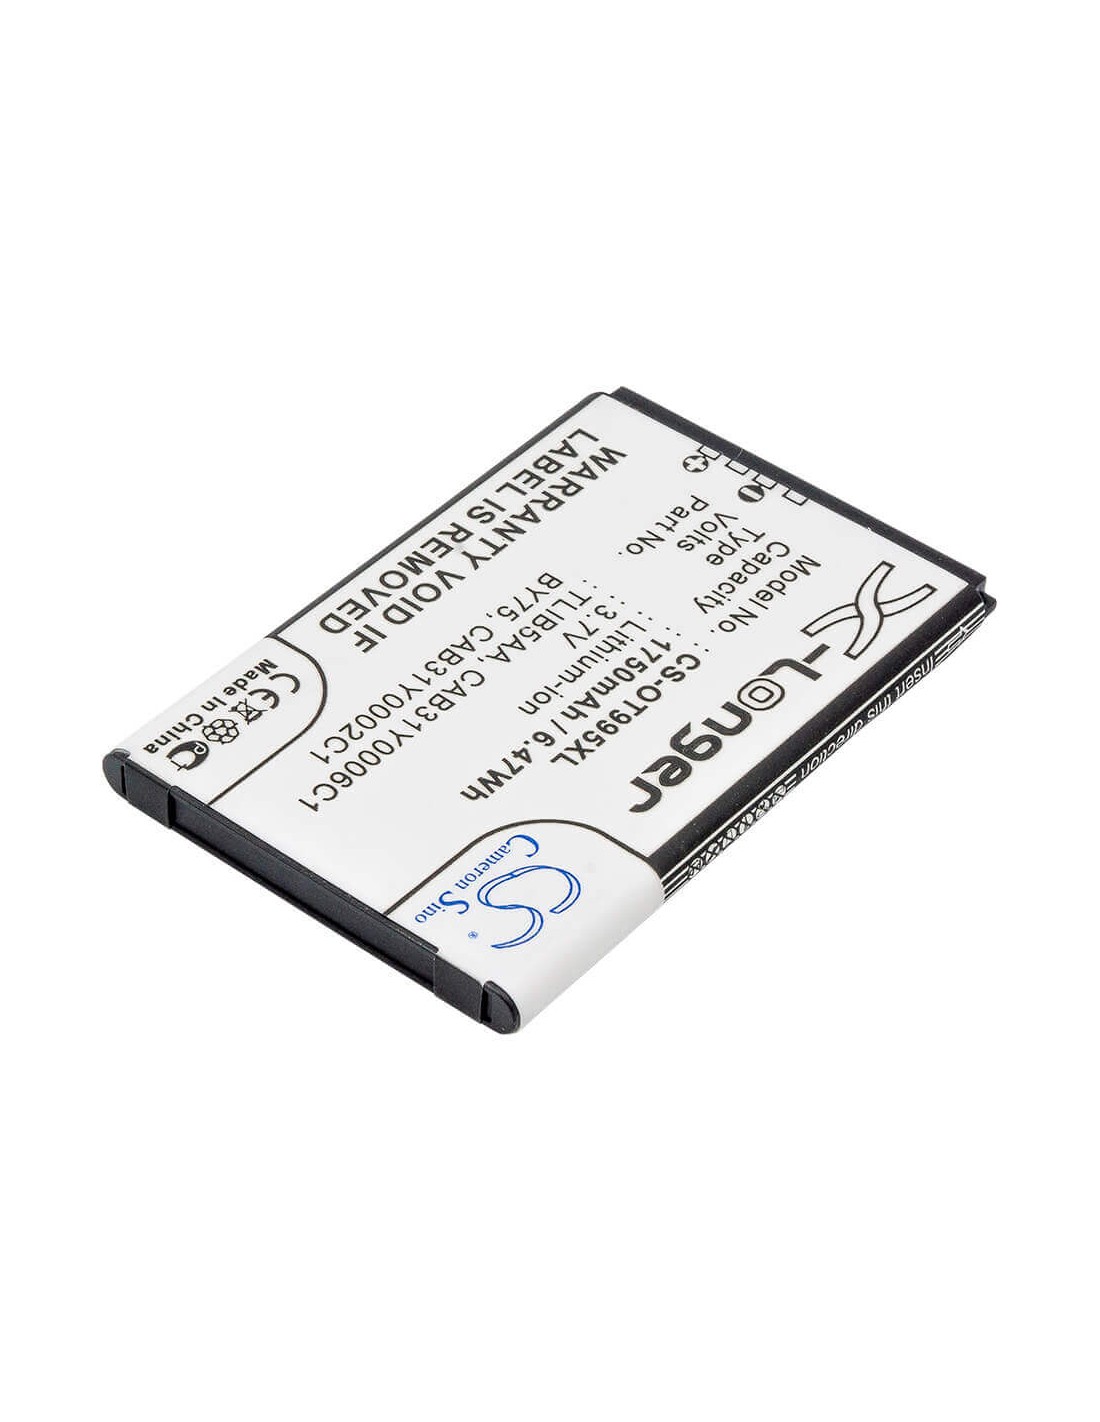 Battery for Alcatel OT-995, OT-995 Ultra, One Touch 995 3.7V, 1750mAh - 6.48Wh